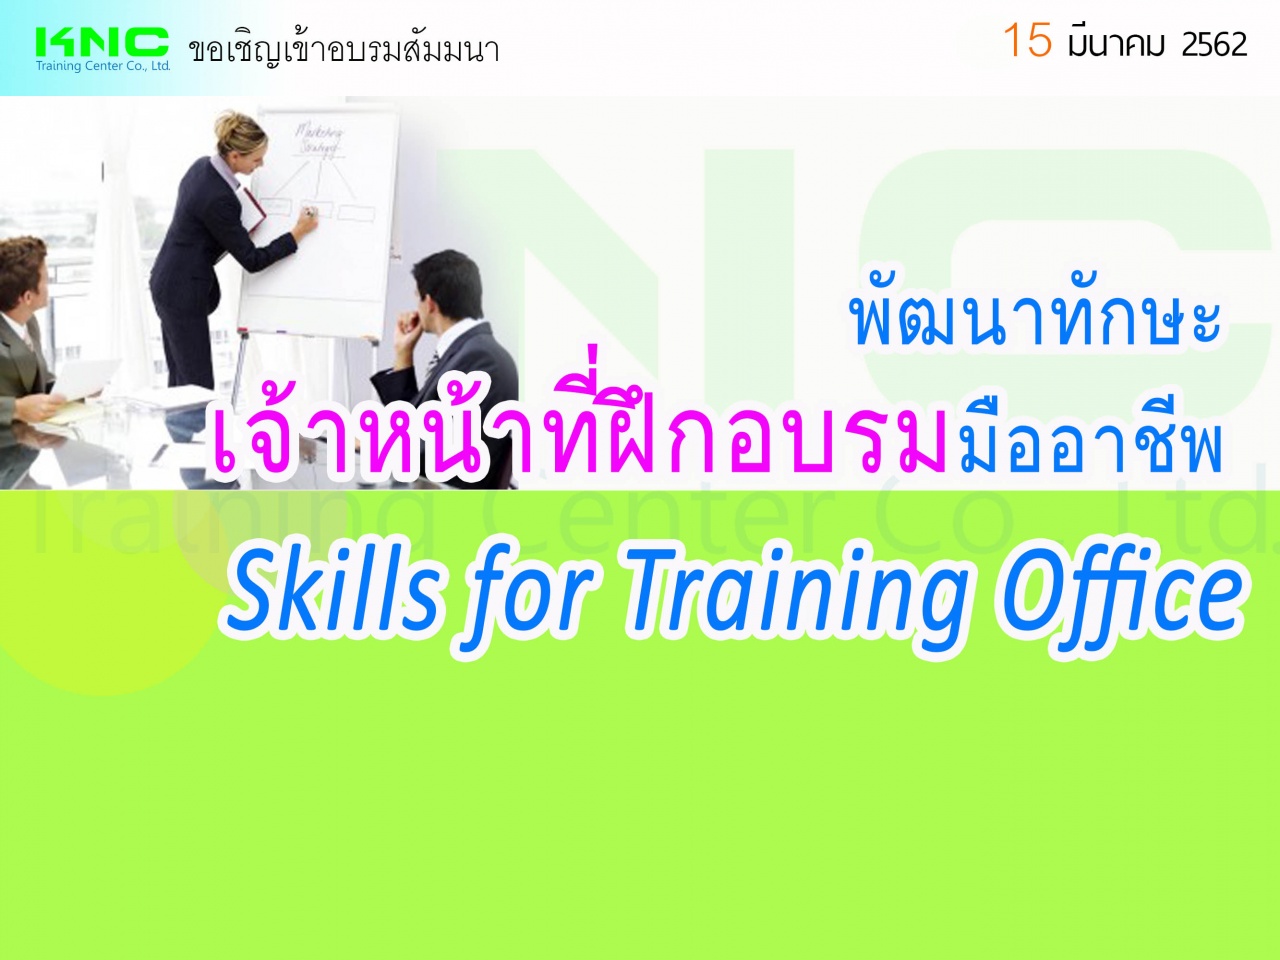 พัฒนาทักษะเจ้าหน้าที่ฝึกอบรมมืออาชีพ (Skills for Training Office)